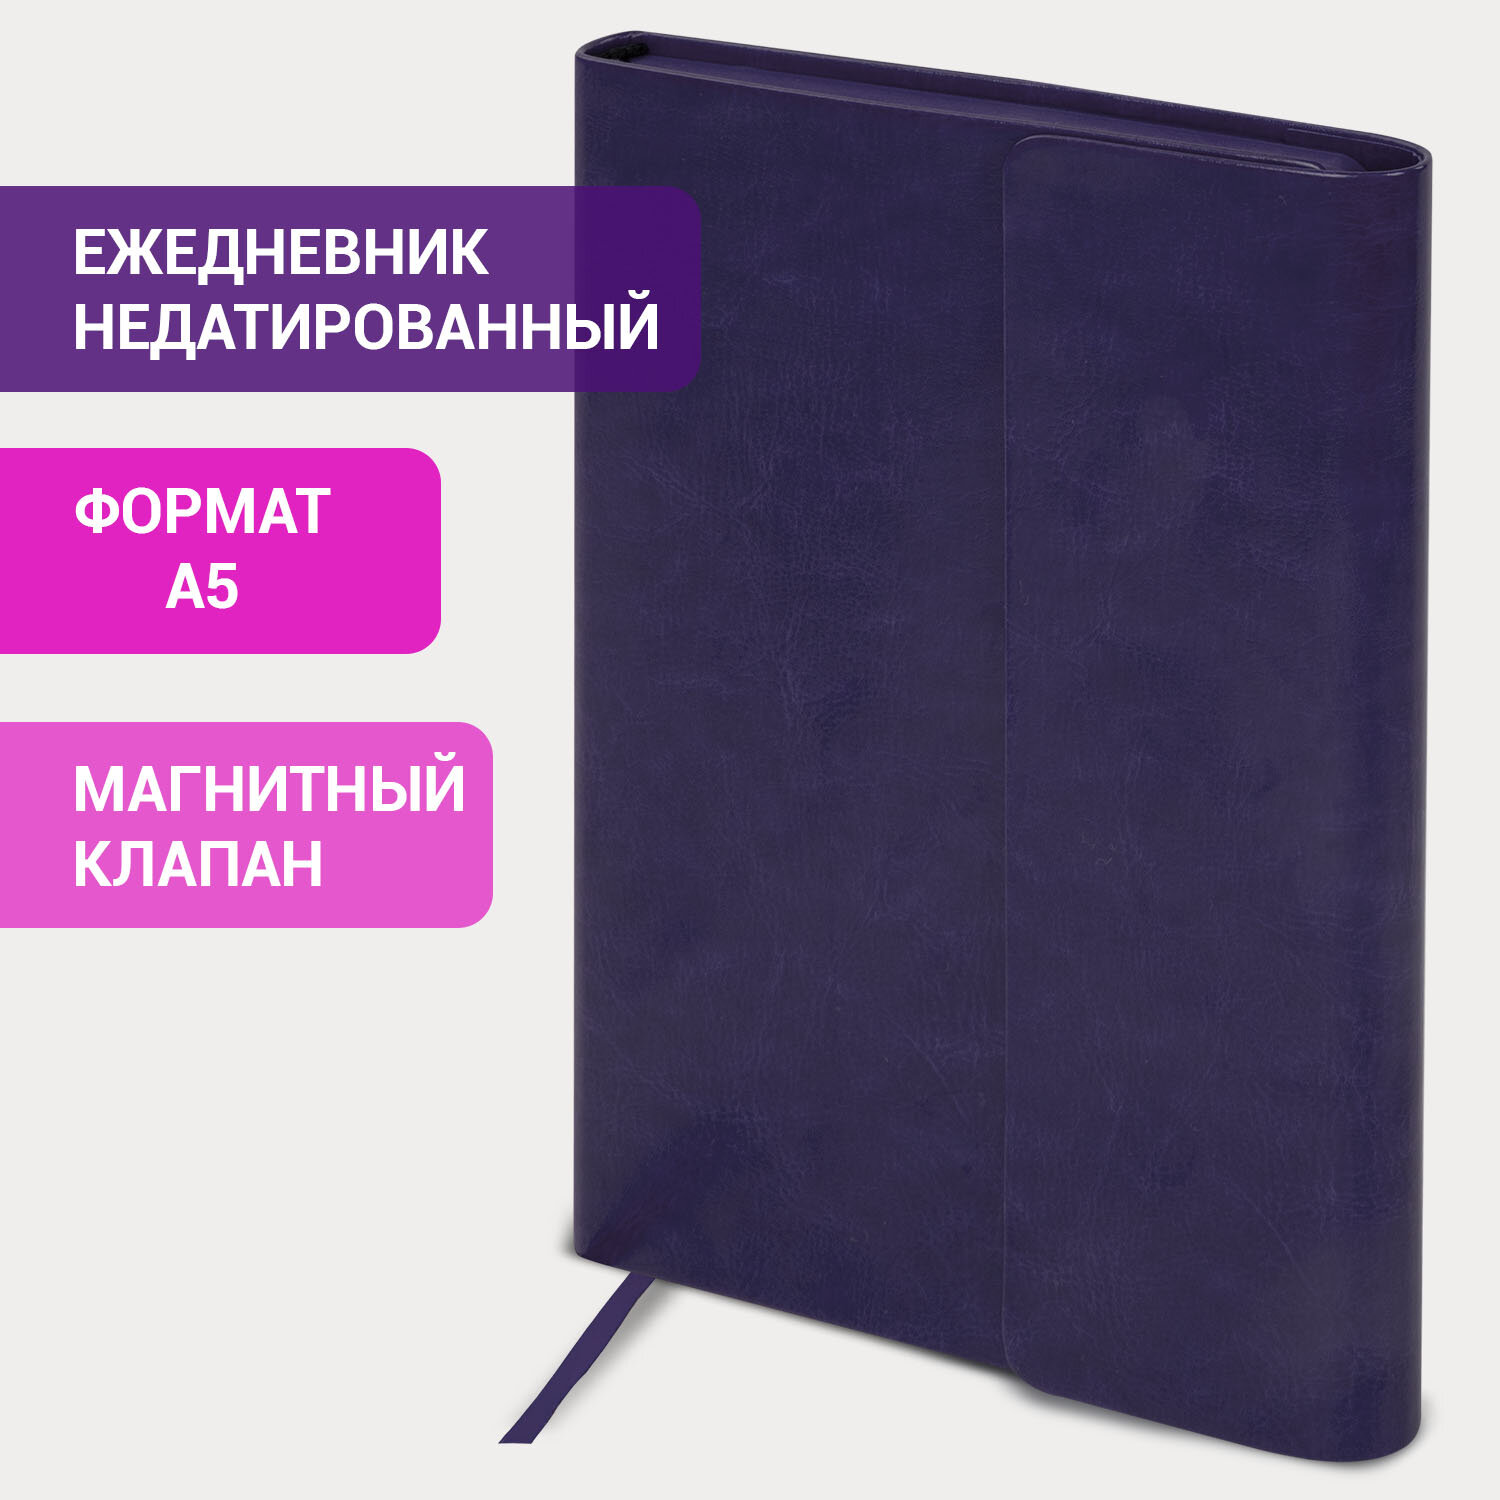 Ежедневник с магнитным клапаном недатированный, под кожу, А5, фиолетовый, BRAUBERG "Magnetic X", 113282